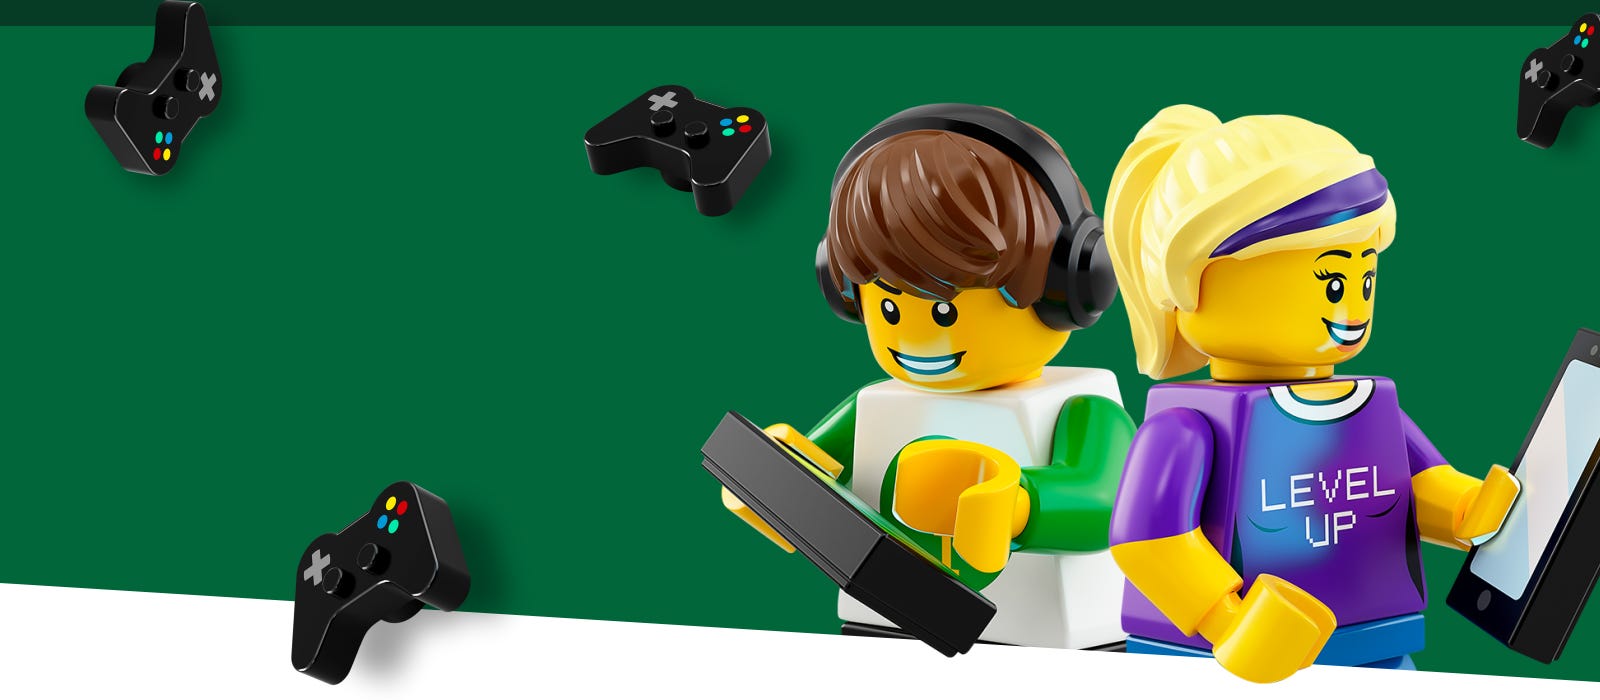 Juguetes y figuras de videojuegos | Oficial LEGO® Shop US